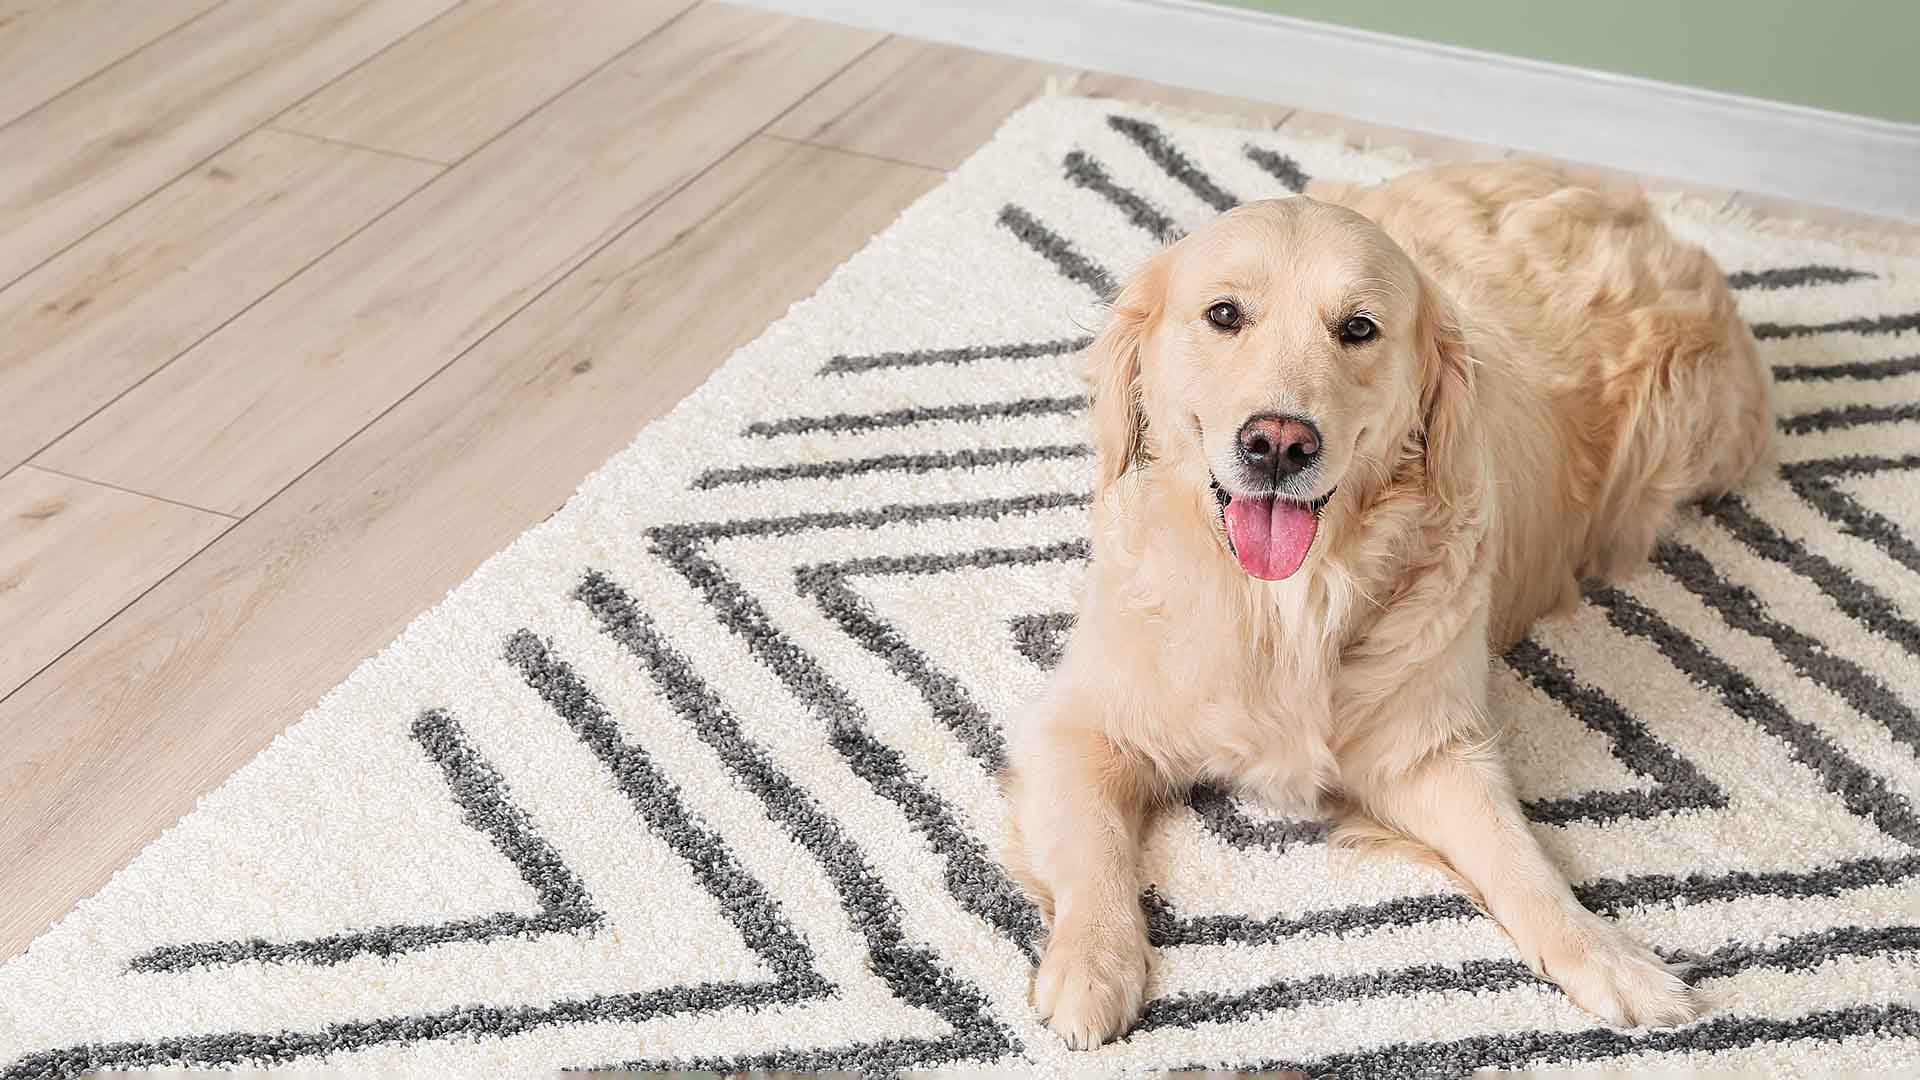 Floor rug by Team Florida with a cute dog